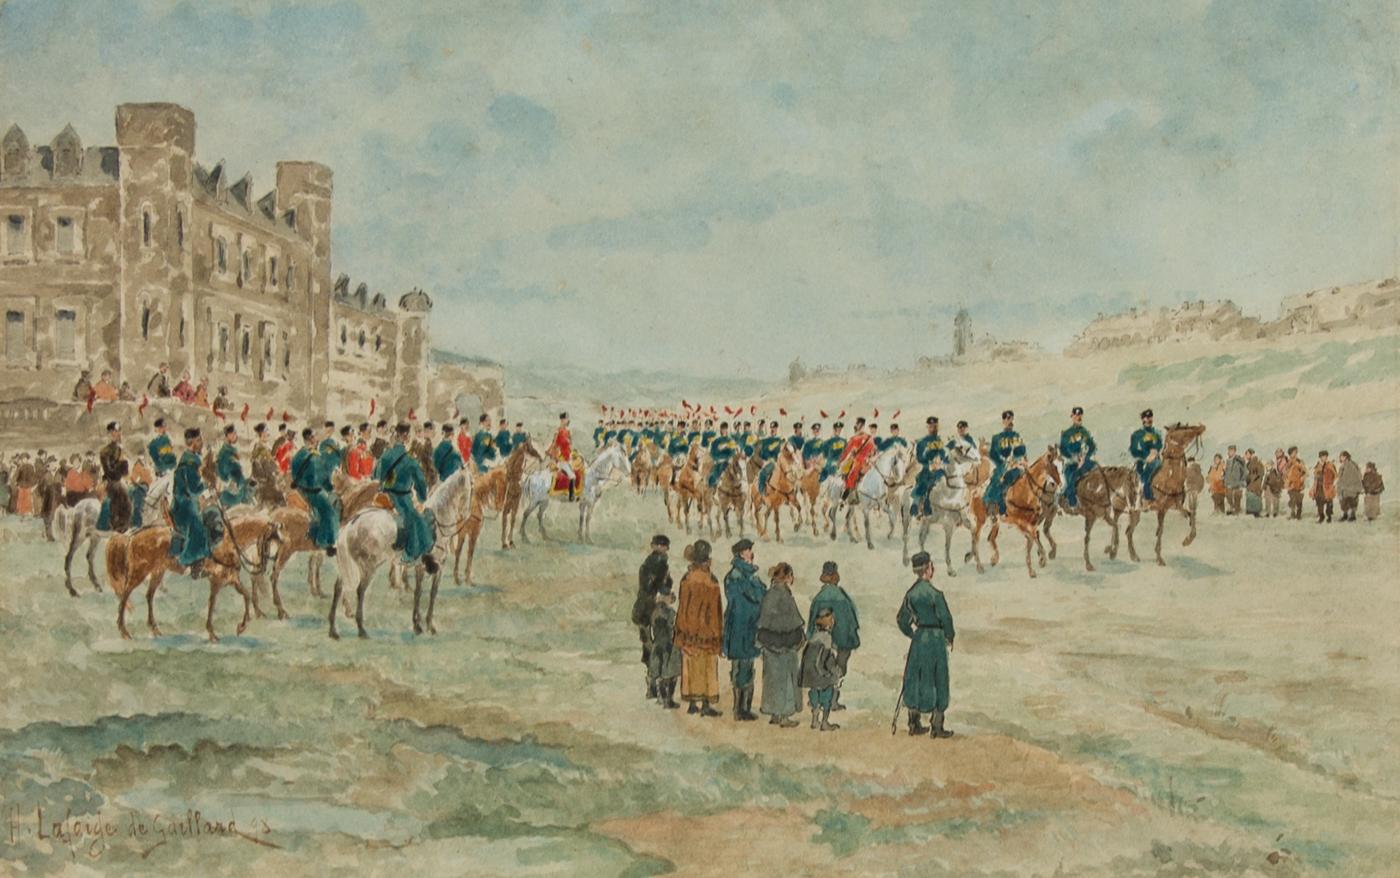 Henri Lafarge de Gaillard - 1898 Watercolour, Lancers March, Military Parade For Sale 1